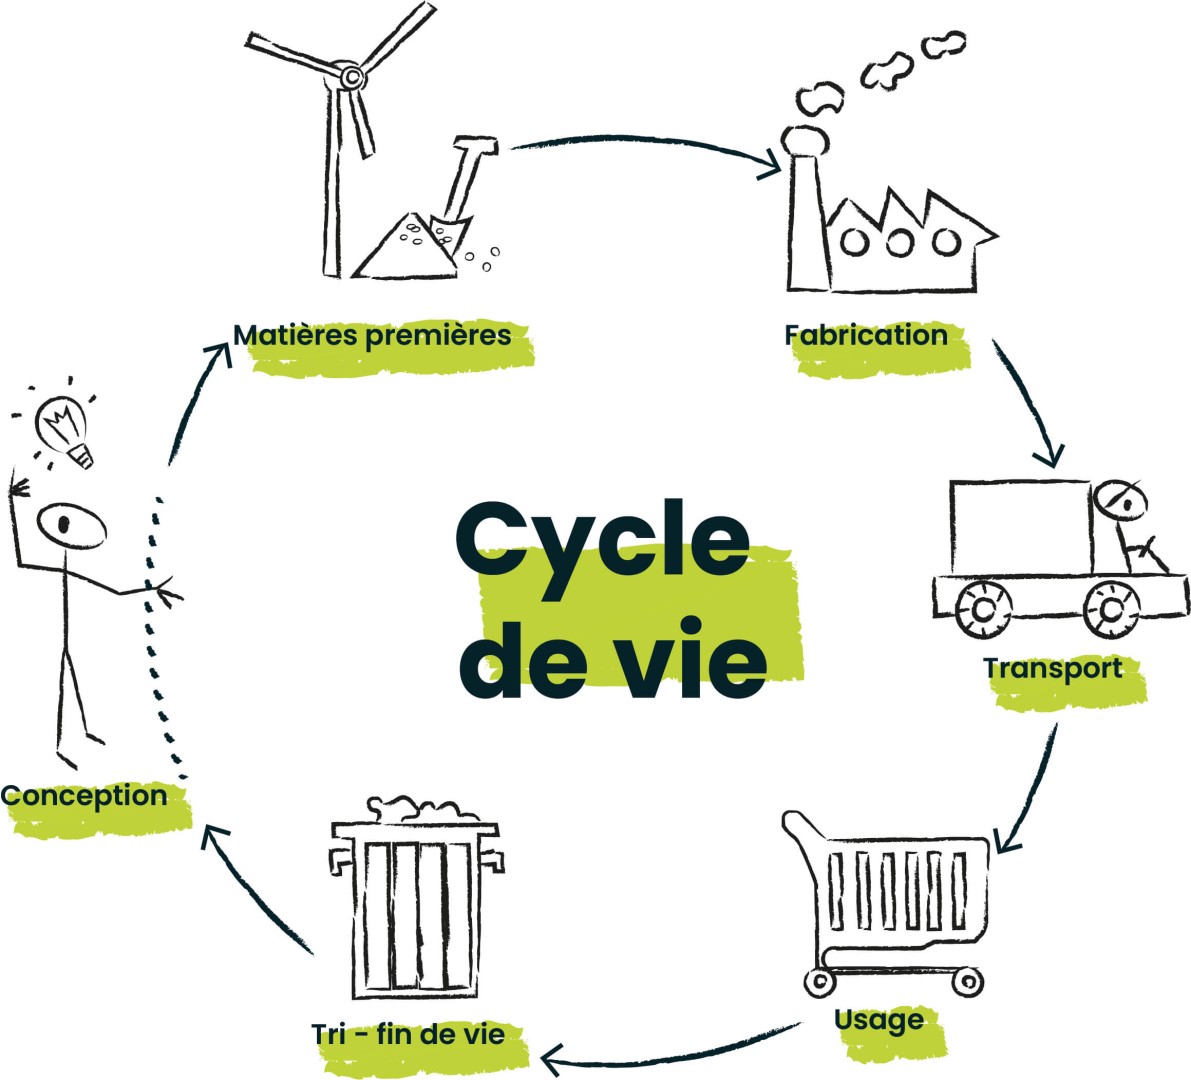 Cycle de vie classique (Pôle Eco-conception)